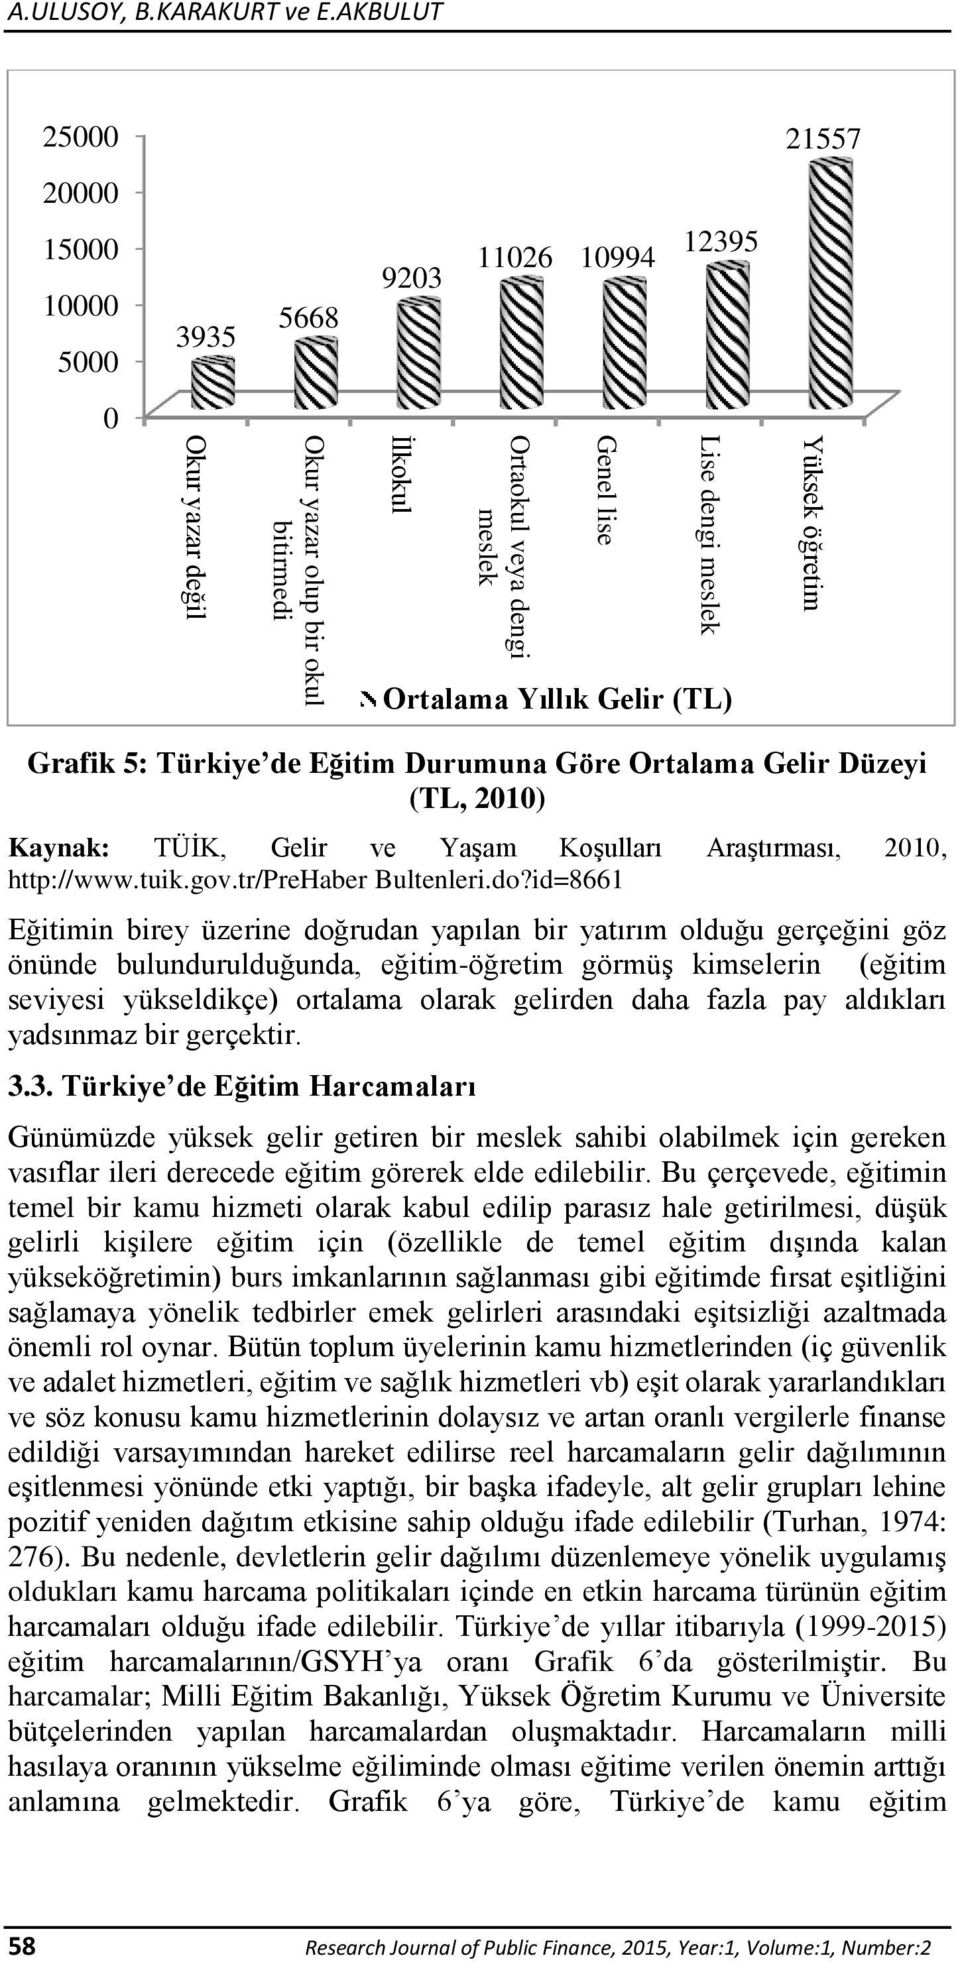 Ortalama Yıllık Gelir (TL) Yüksek öğretim Grafik 5: Türkiye de Eğitim Durumuna Göre Ortalama Gelir Düzeyi (TL, 2010) Kaynak: TÜİK, Gelir ve Yaşam Koşulları Araştırması, 2010, http://www.tuik.gov.